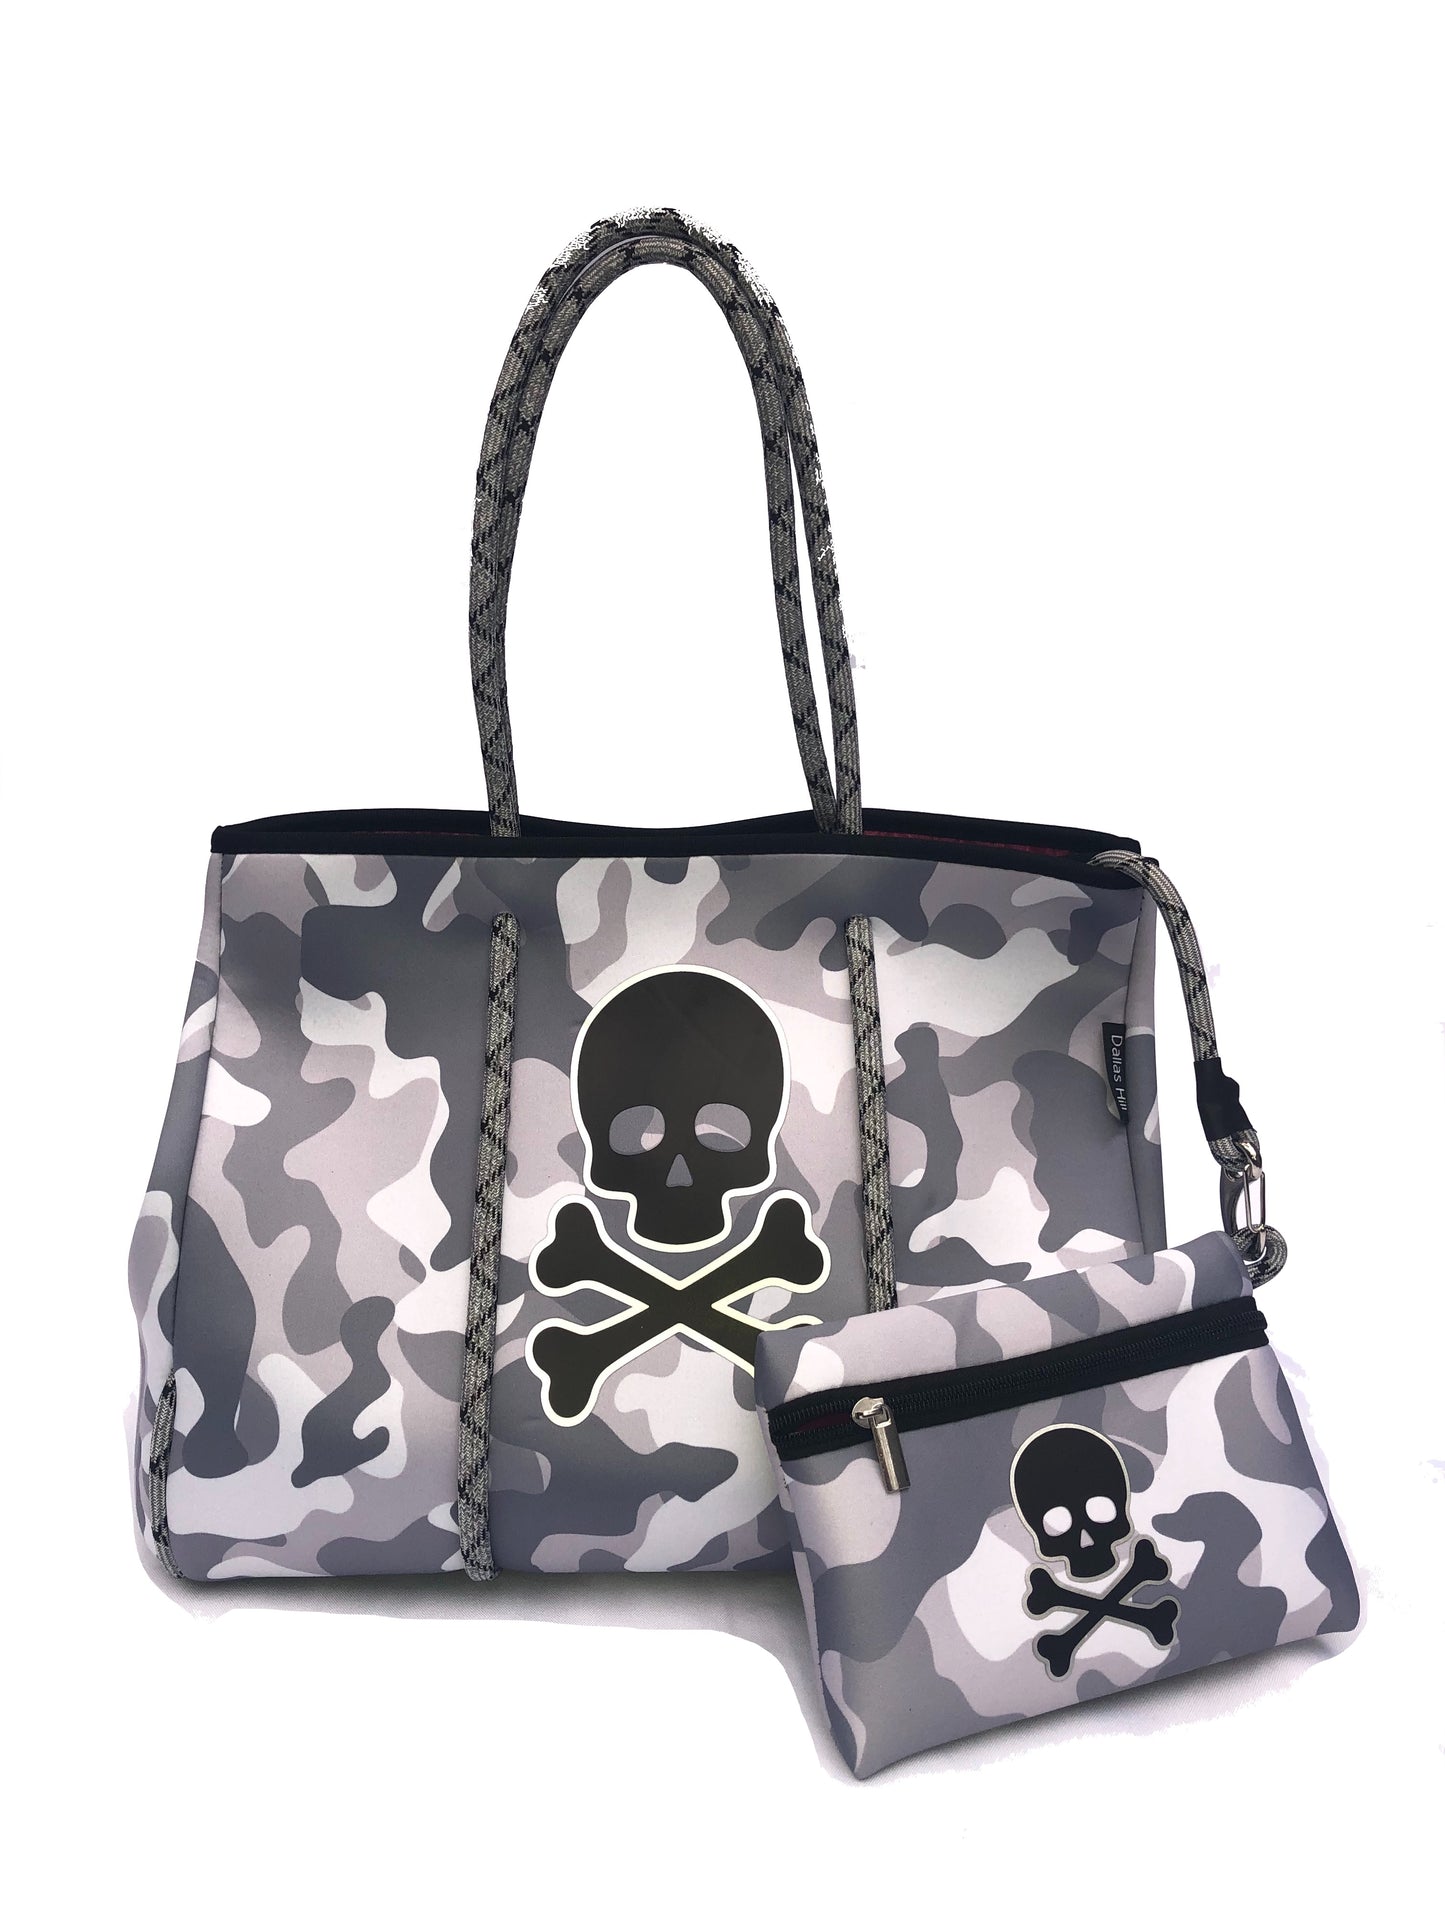 Neoprene Tote Bag Camo Skull by Dallas Hill Design